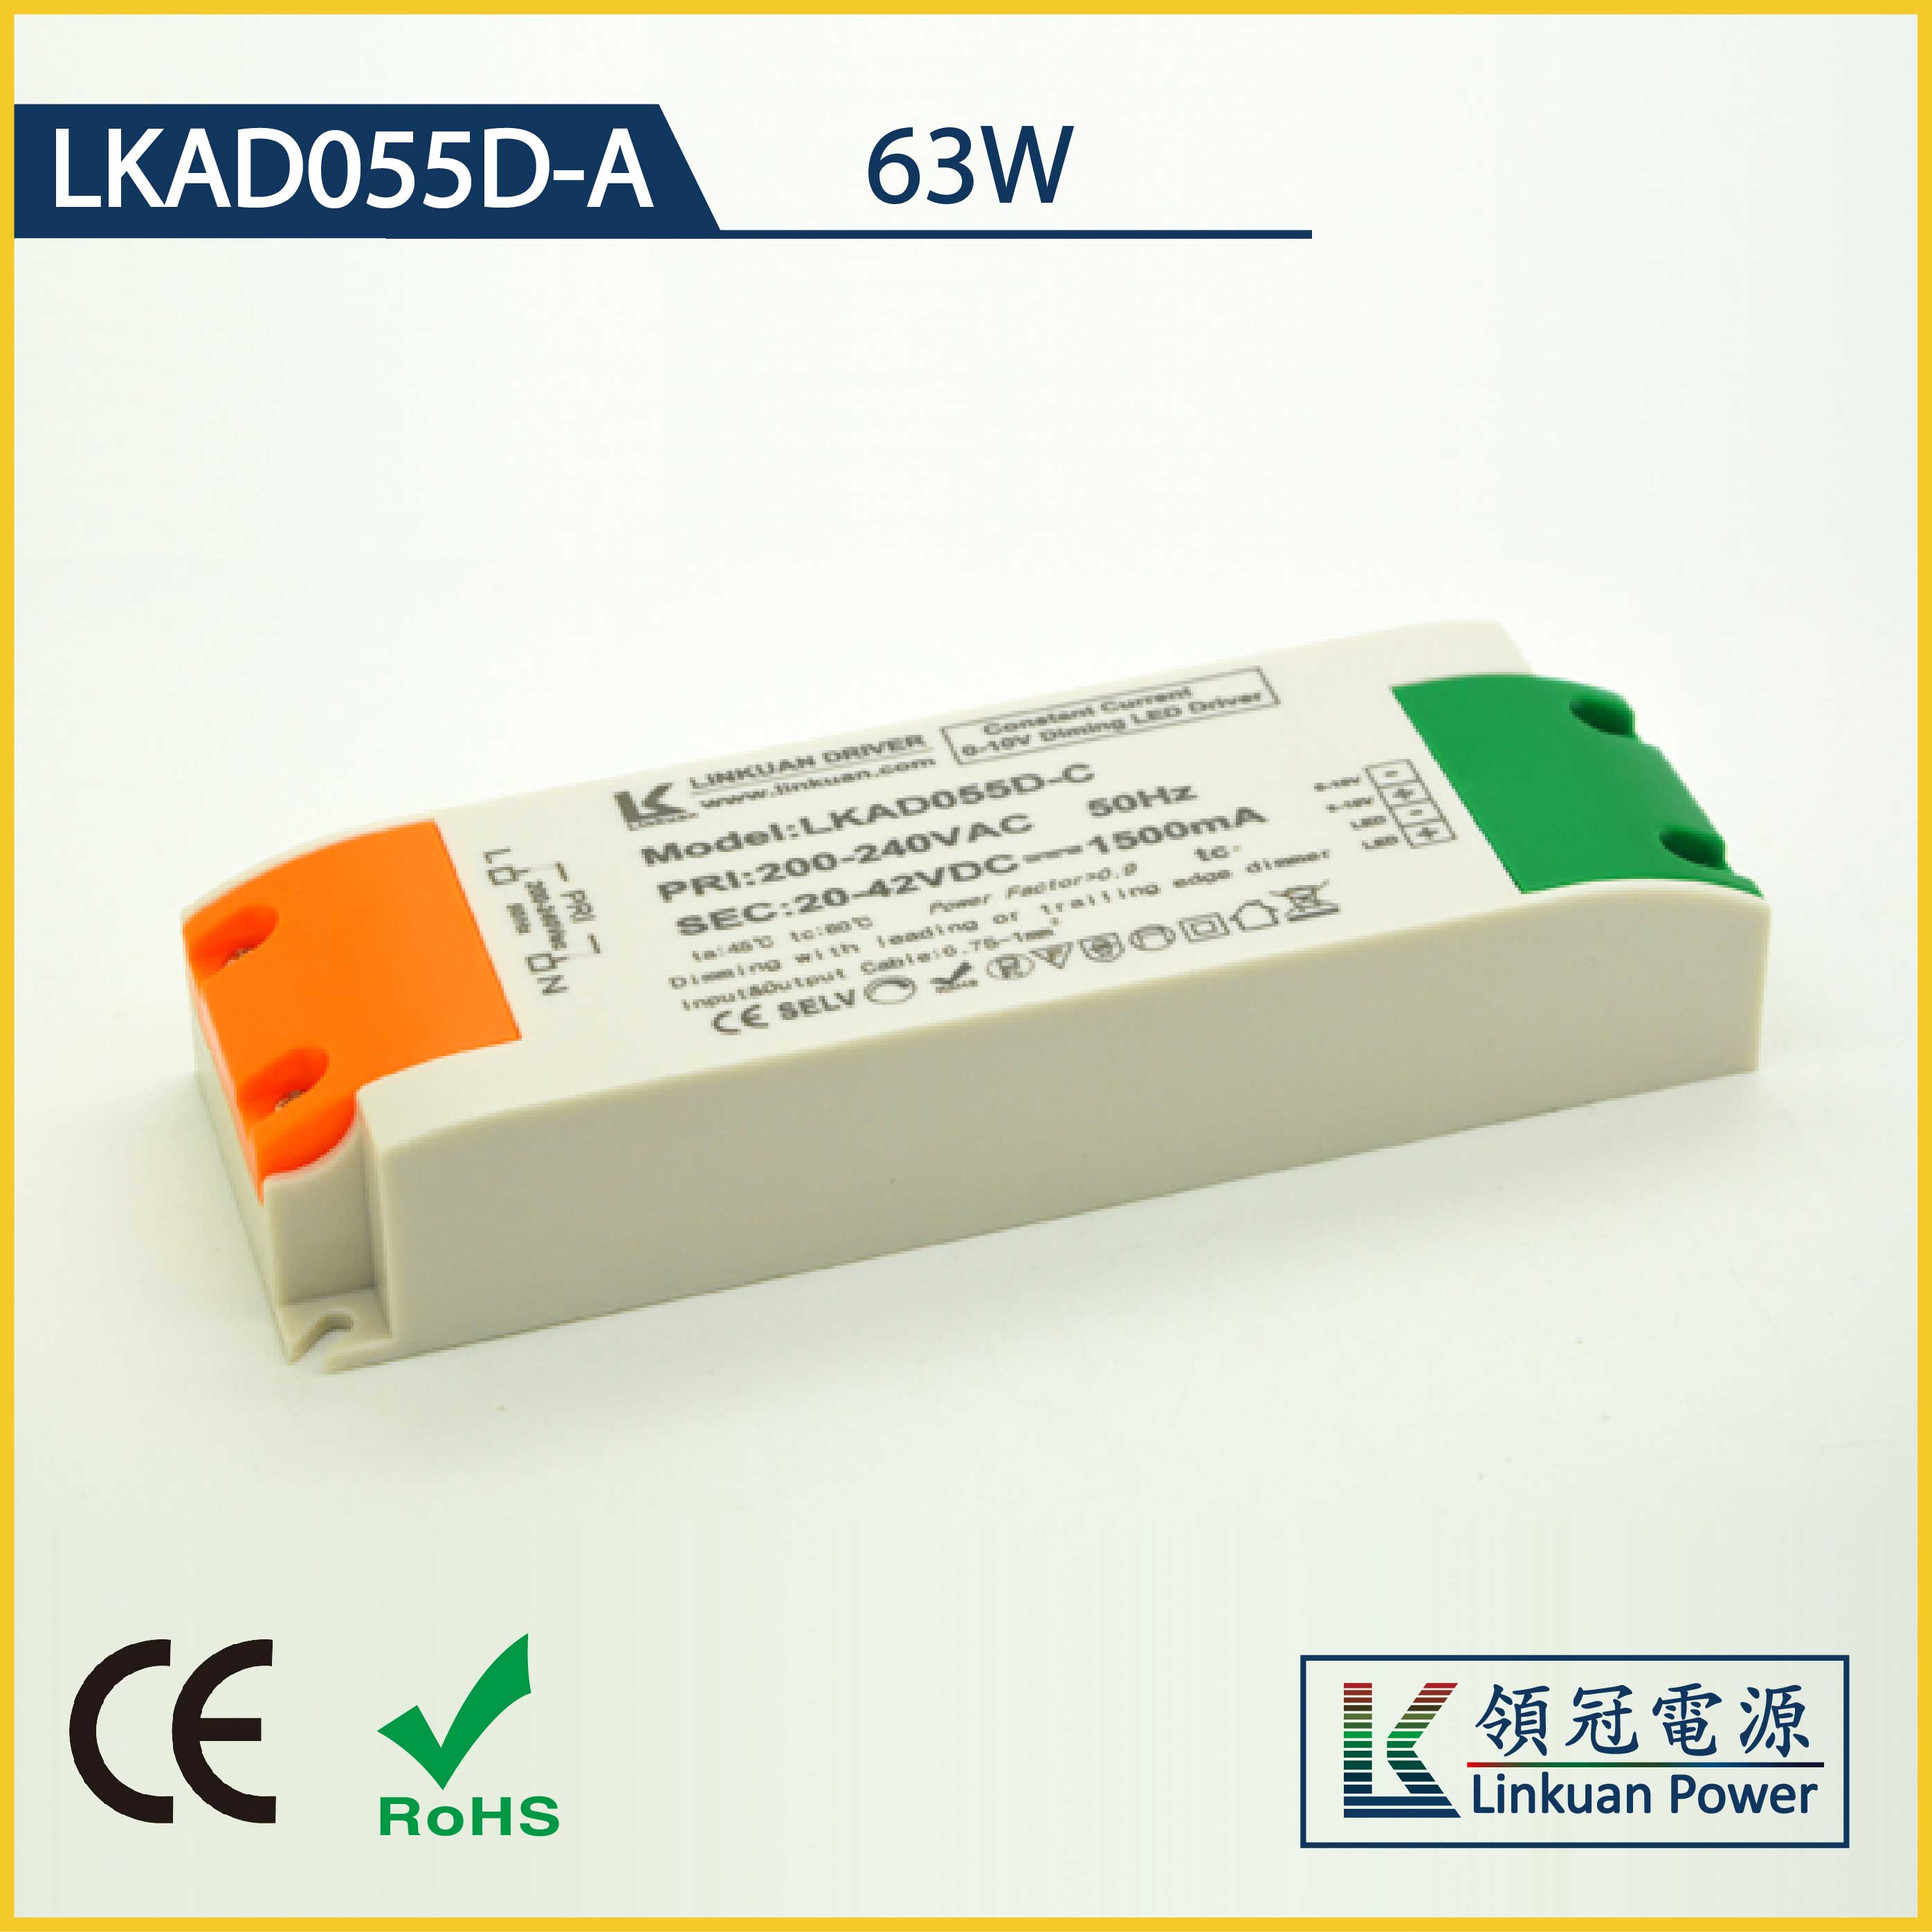 LKAD055D-A 63W 5-42V 1500mA CCT Adjusting LED drivers